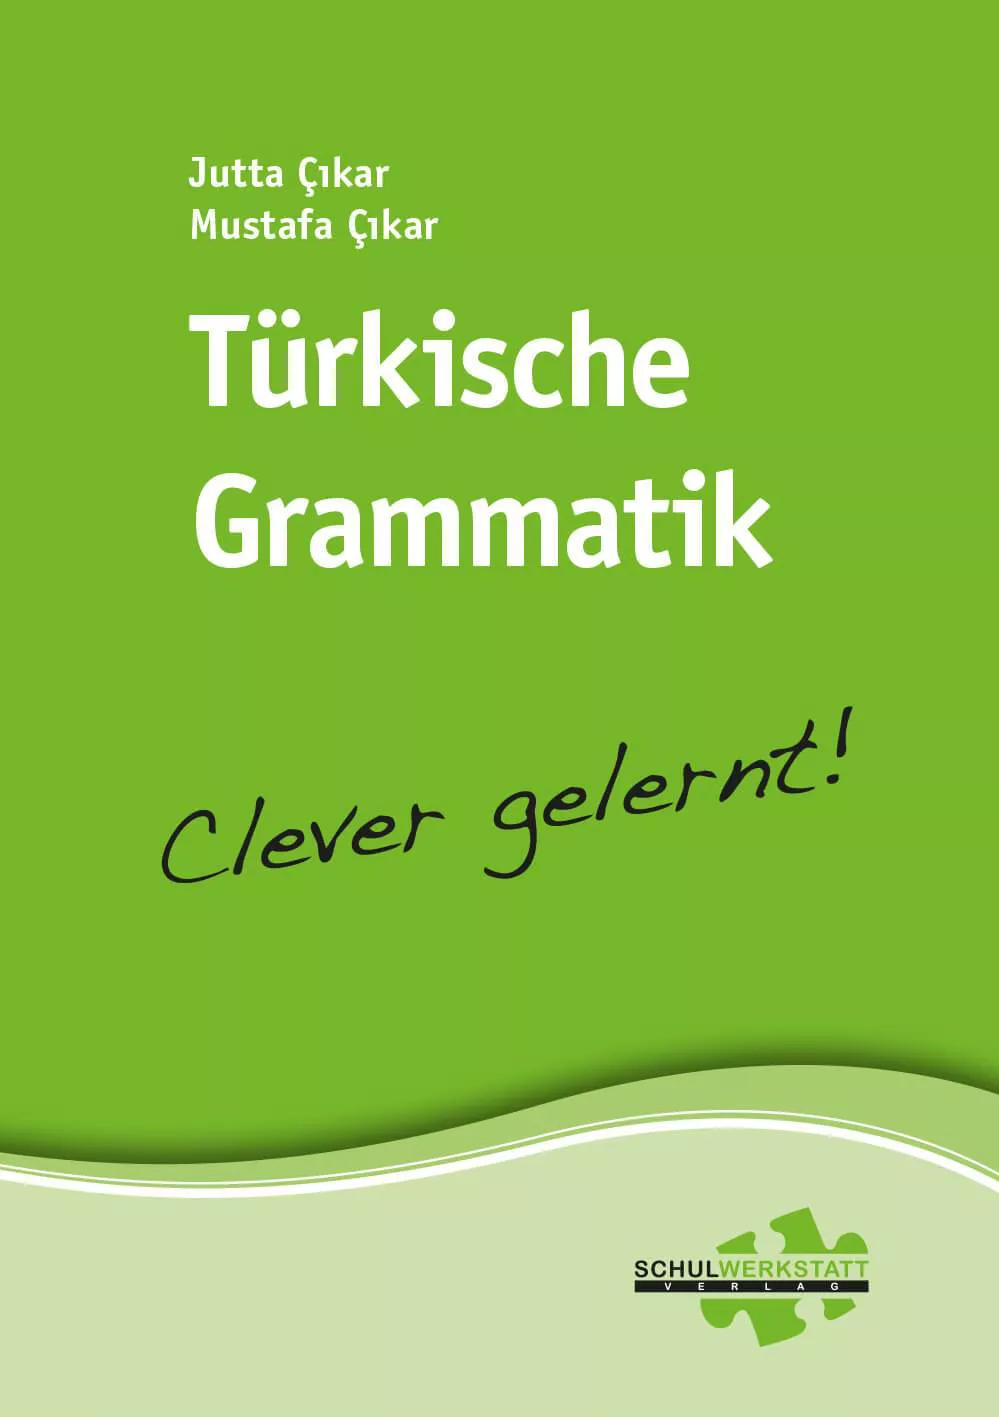 Türkische Grammatik - clever gelernt